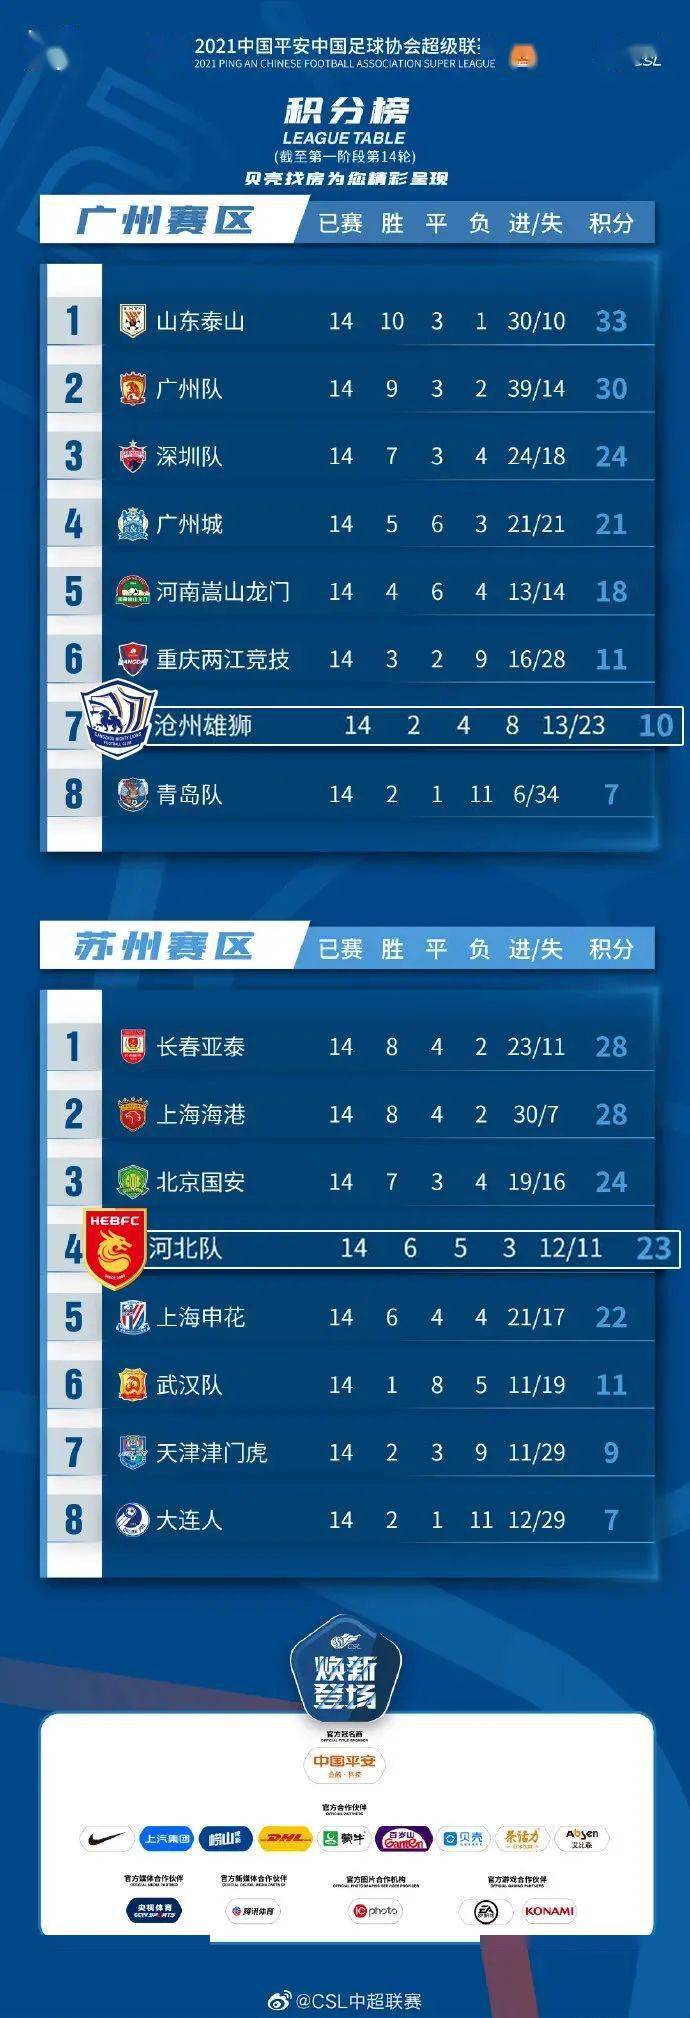 2021中国平安中国足球协会超级联赛第一阶段积分榜